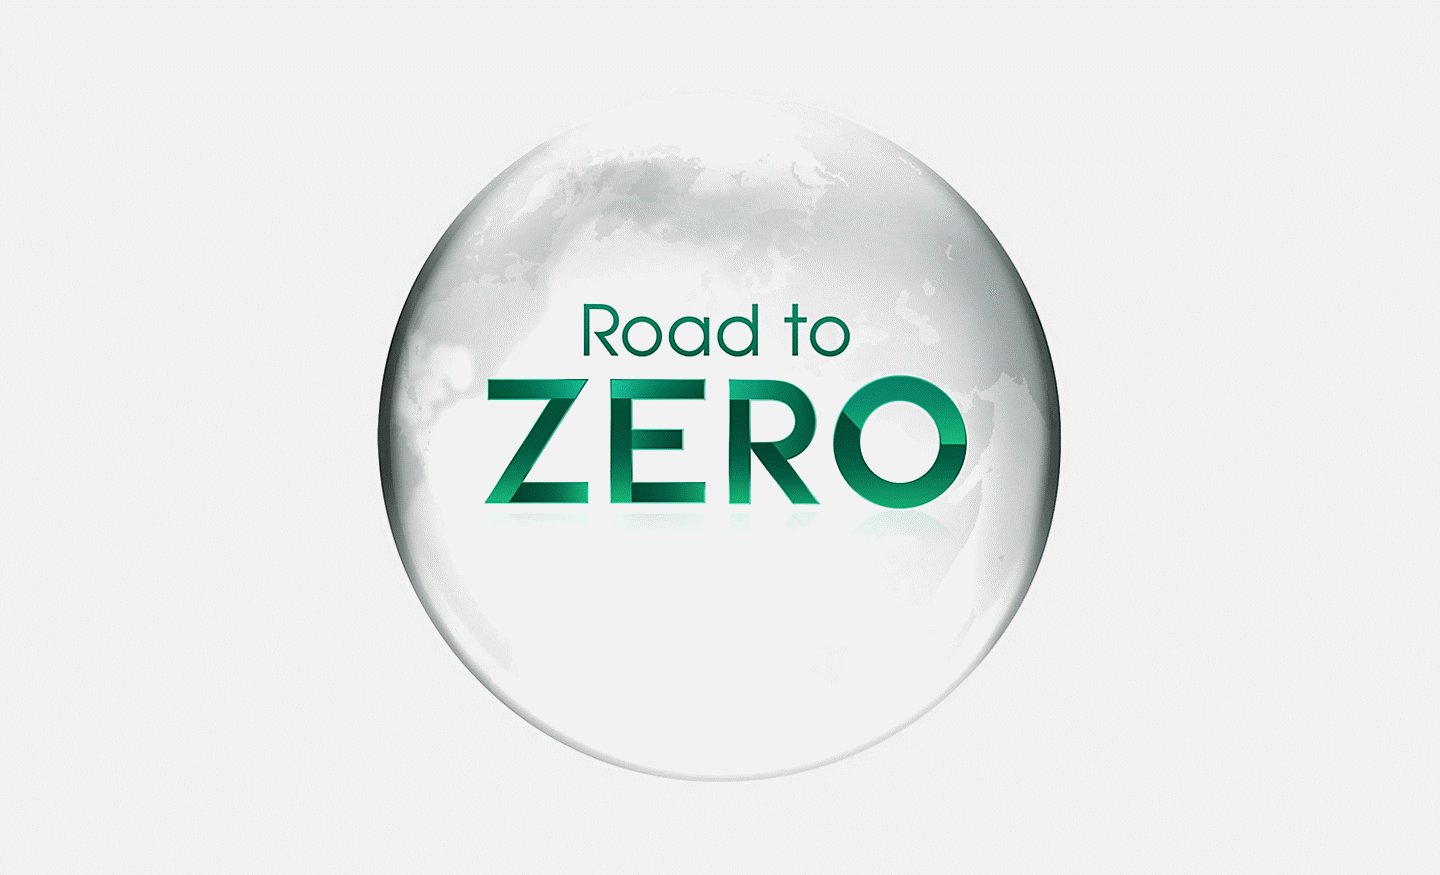 Imagem que ilustra a iniciativa Road to Zero da Sony